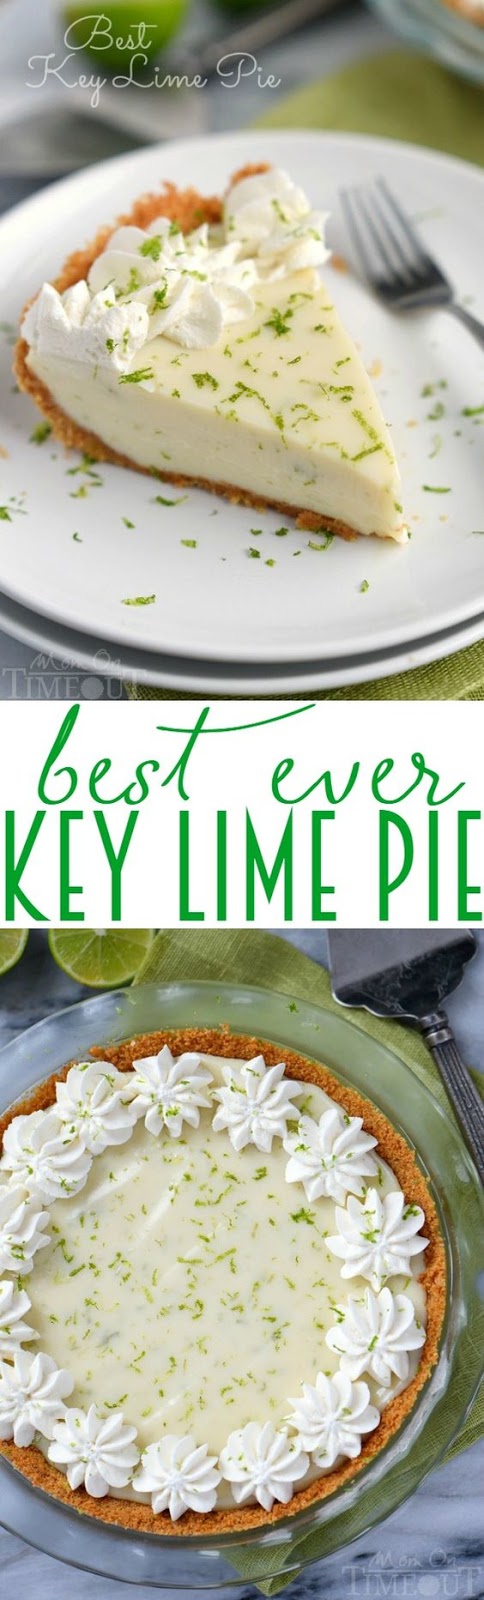 Best Key Lime Pie | FoodGaZm..